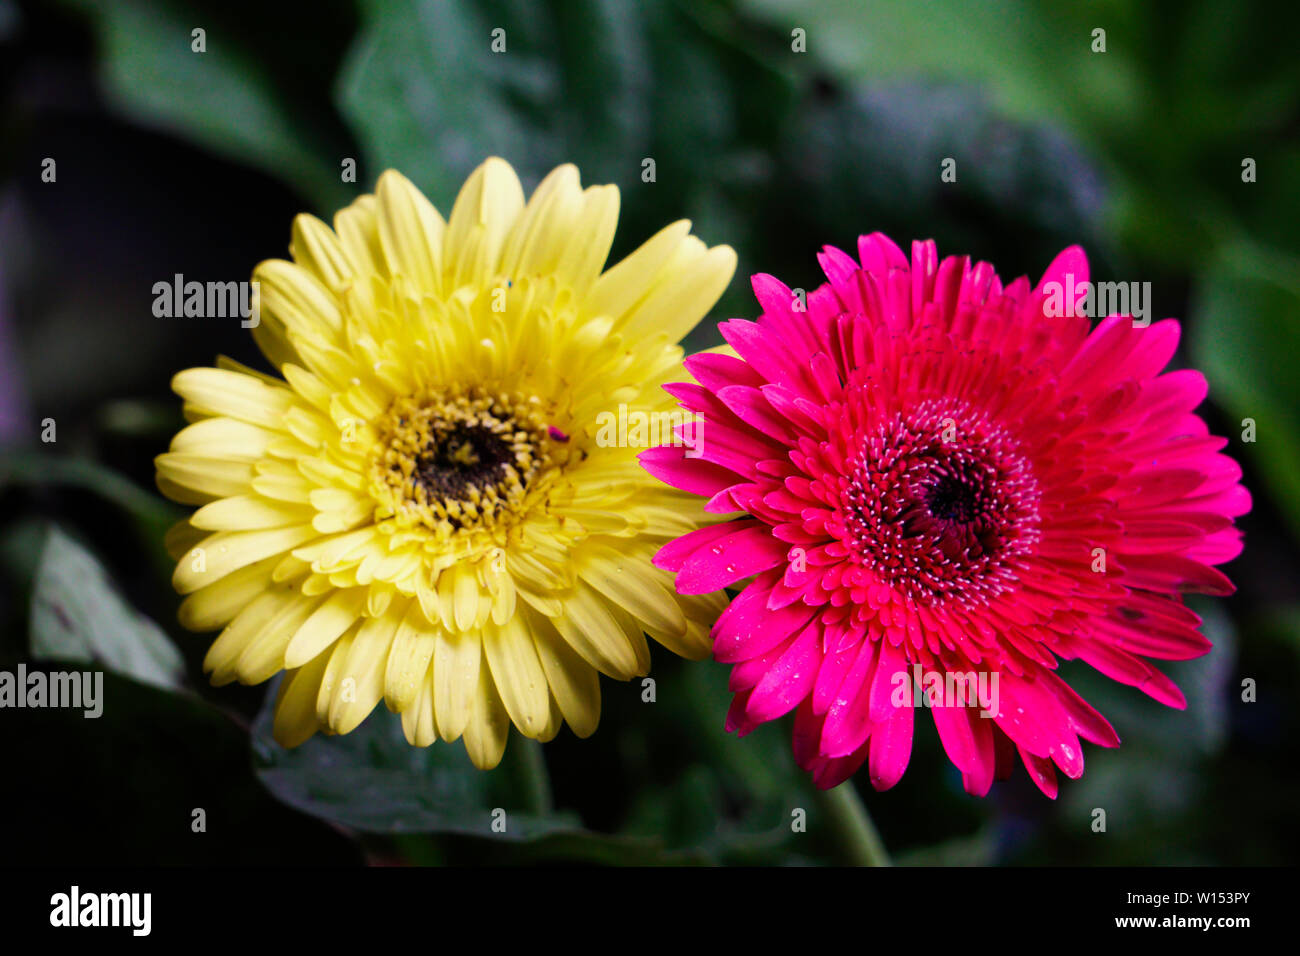 Giallo e Rosa isolato di immagini di fiori Foto Stock